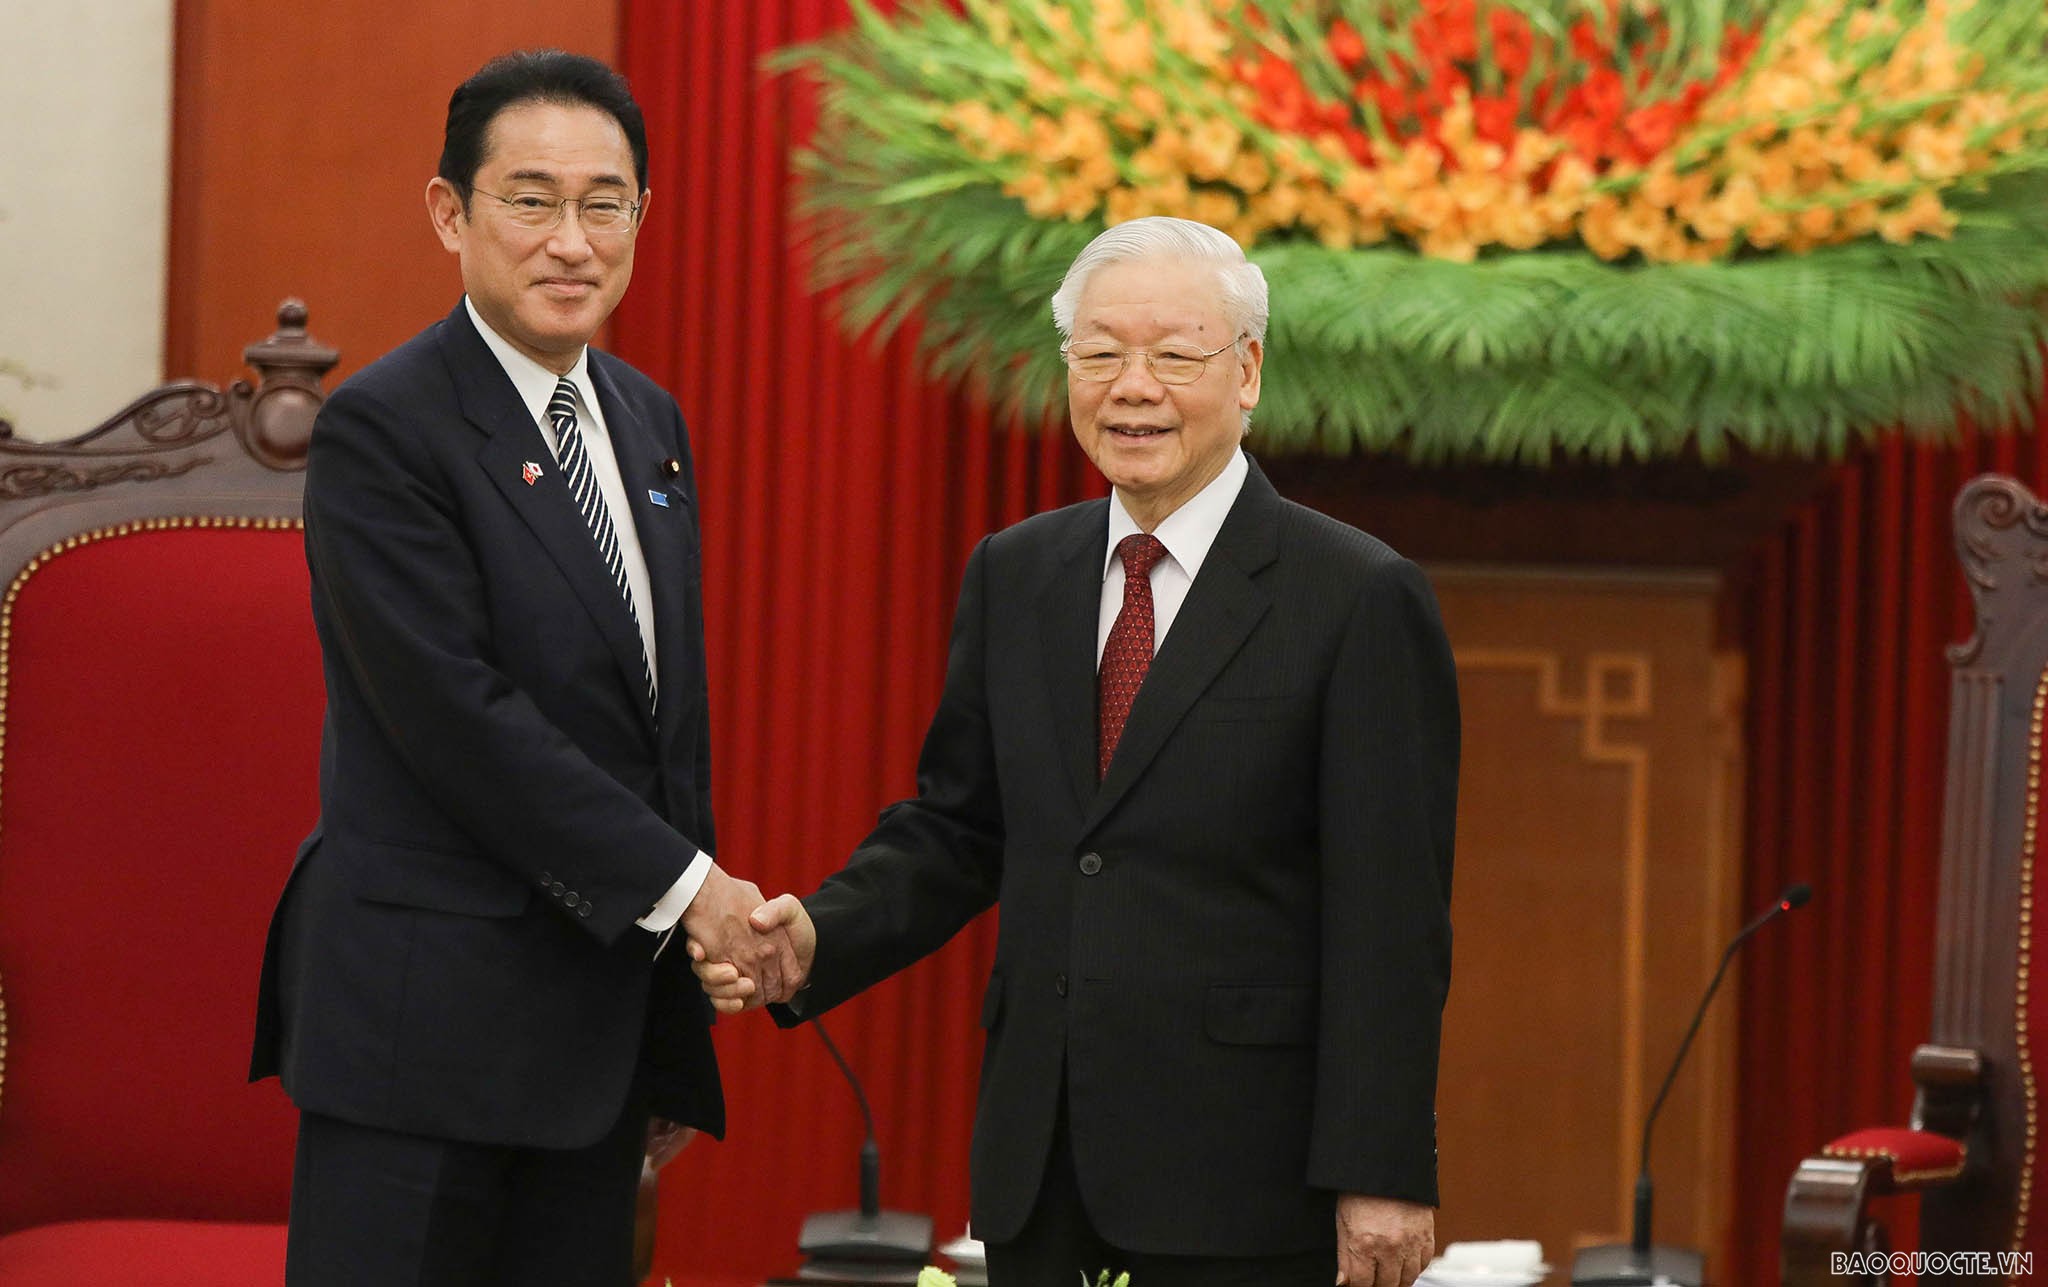 Tổng Bí thư Nguyễn Phú Trọng tiếp Thủ tướng Nhật Kishida Fumio